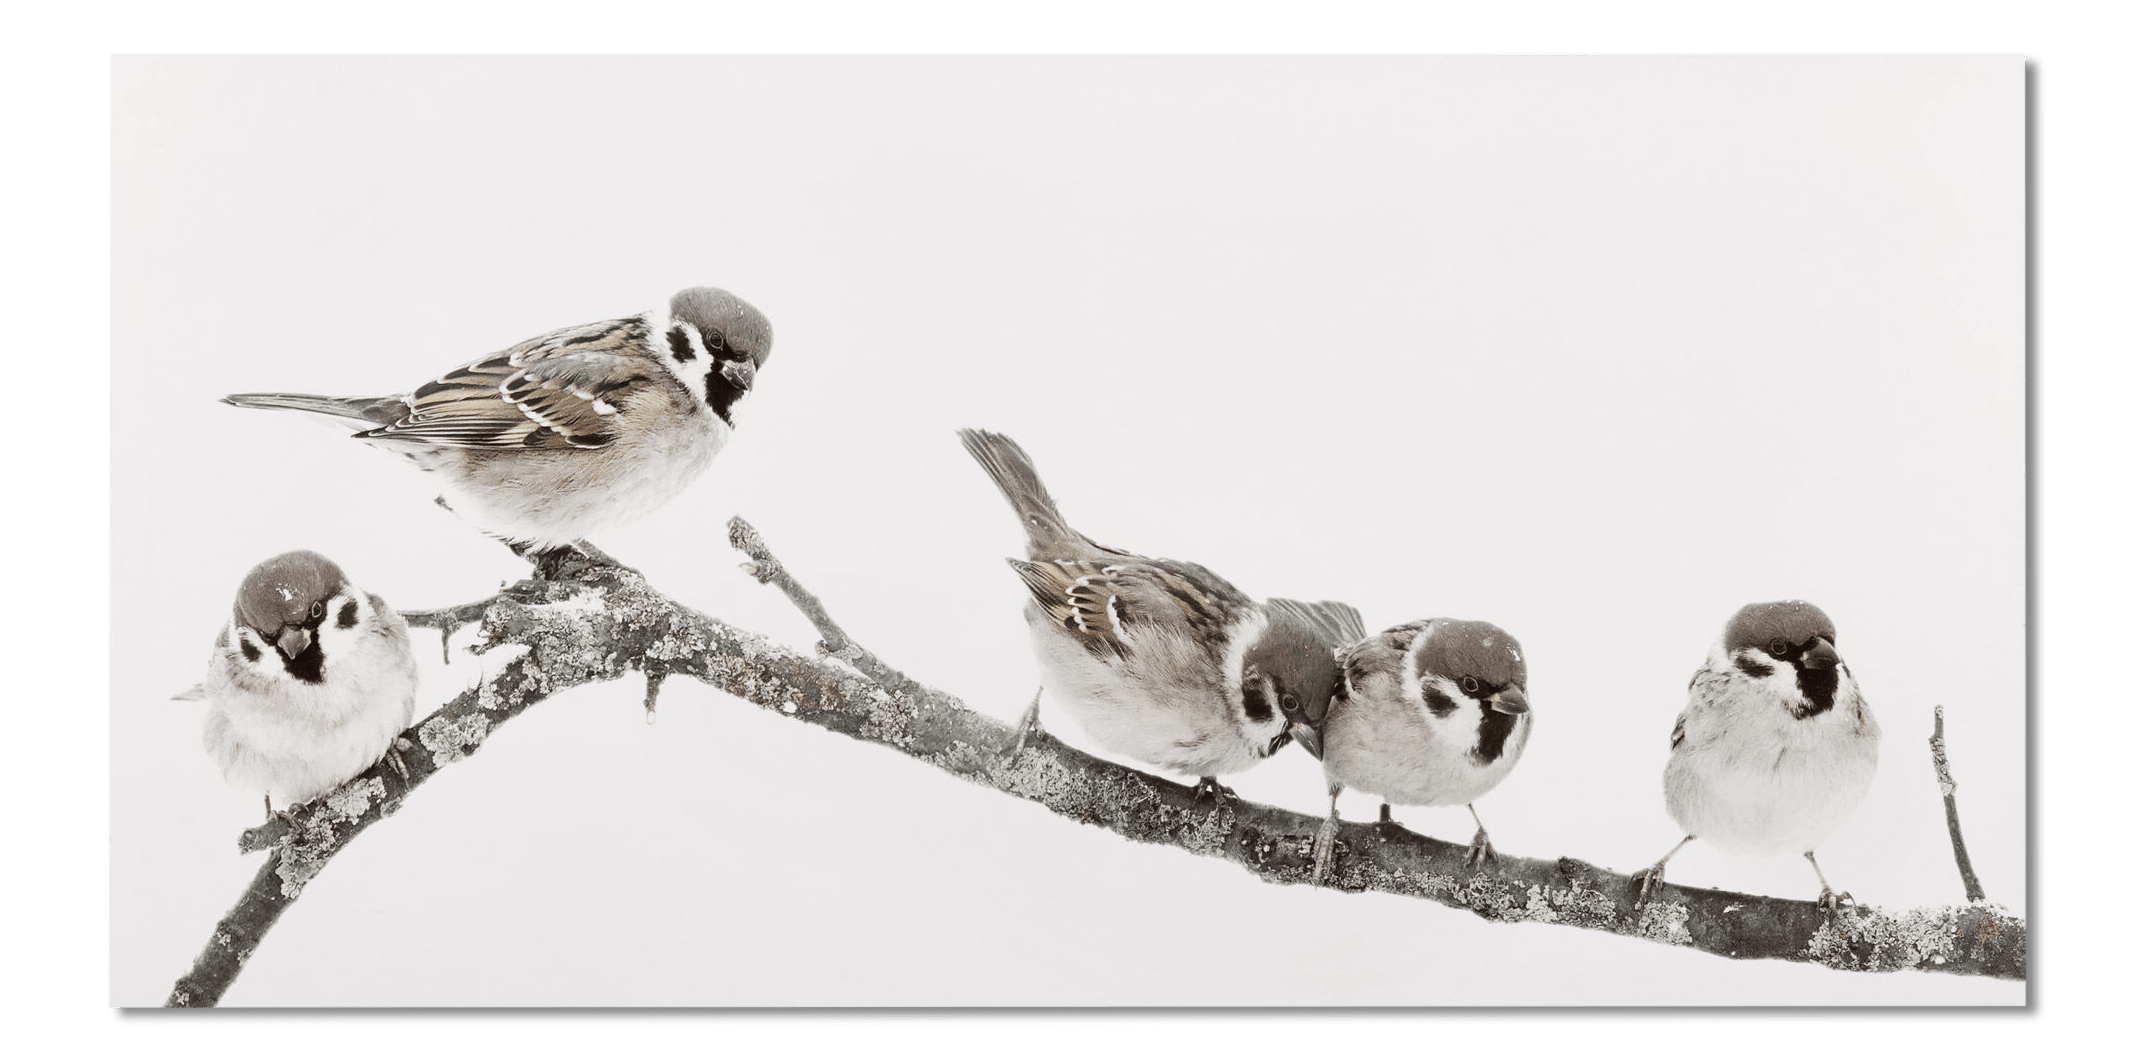 Tableau imprimé de petits oiseaux perchés